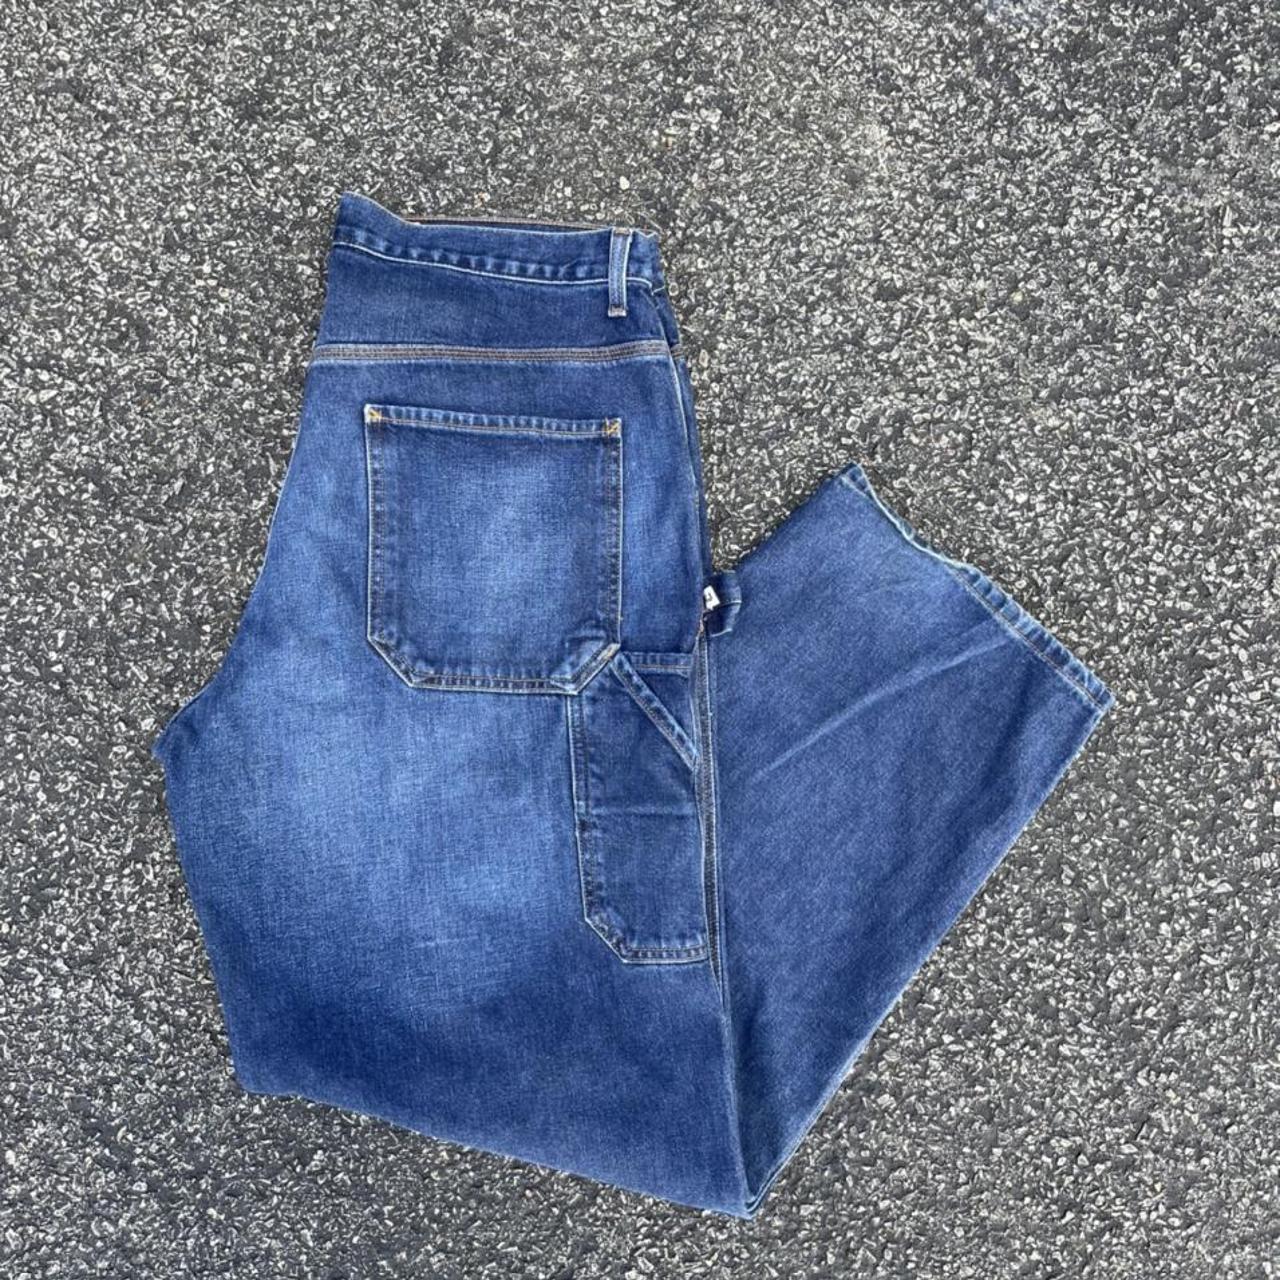 Vintage Calvin Klein carpenter jeans dark wash Good... - Depop